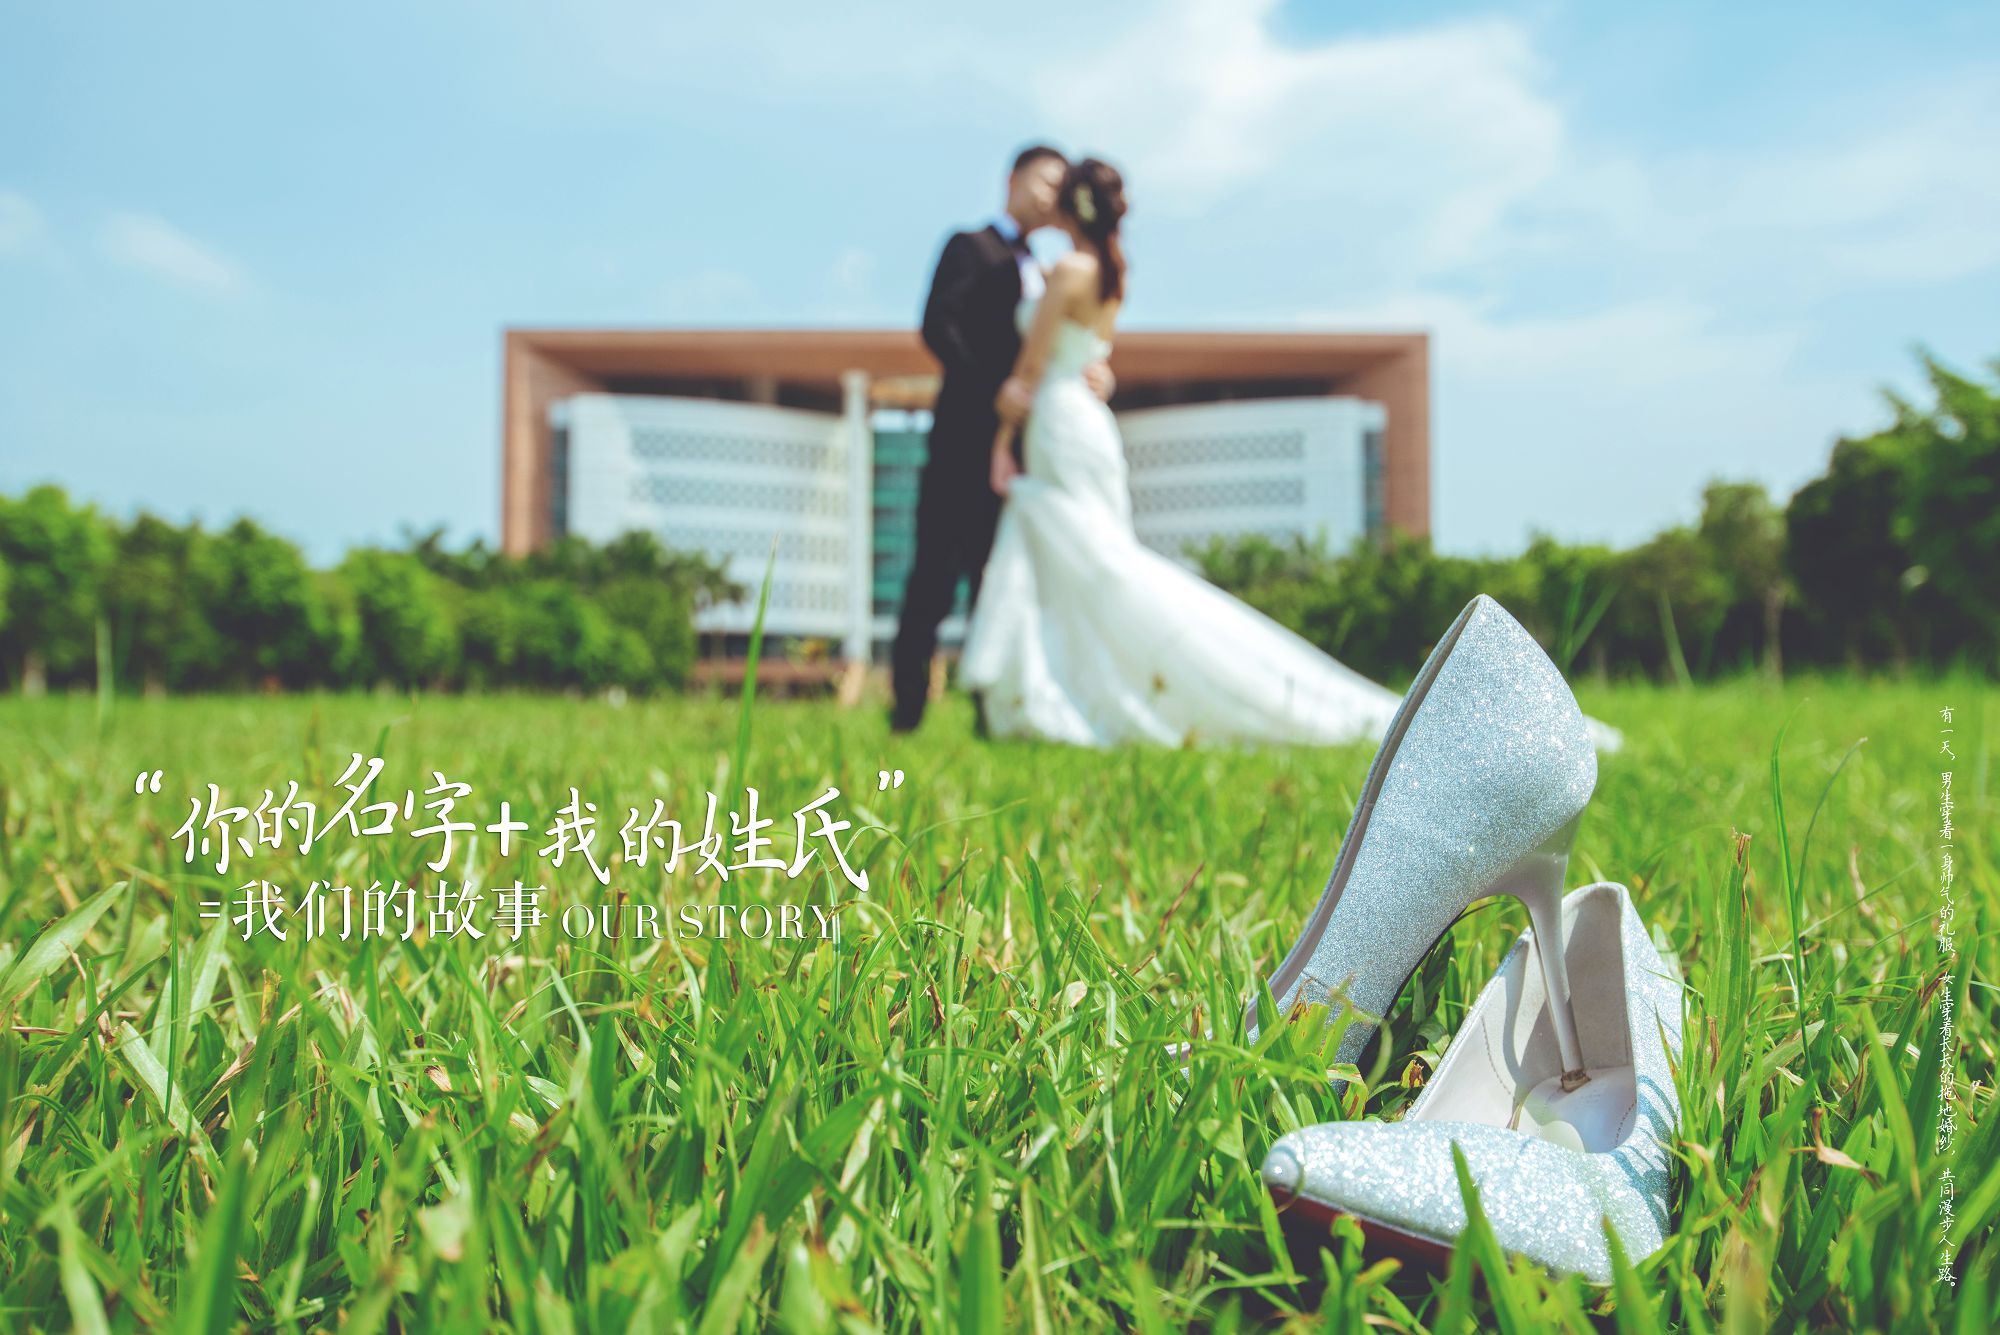 2018年11月广州婚纱照图片,广州婚纱照,婚纱照图片